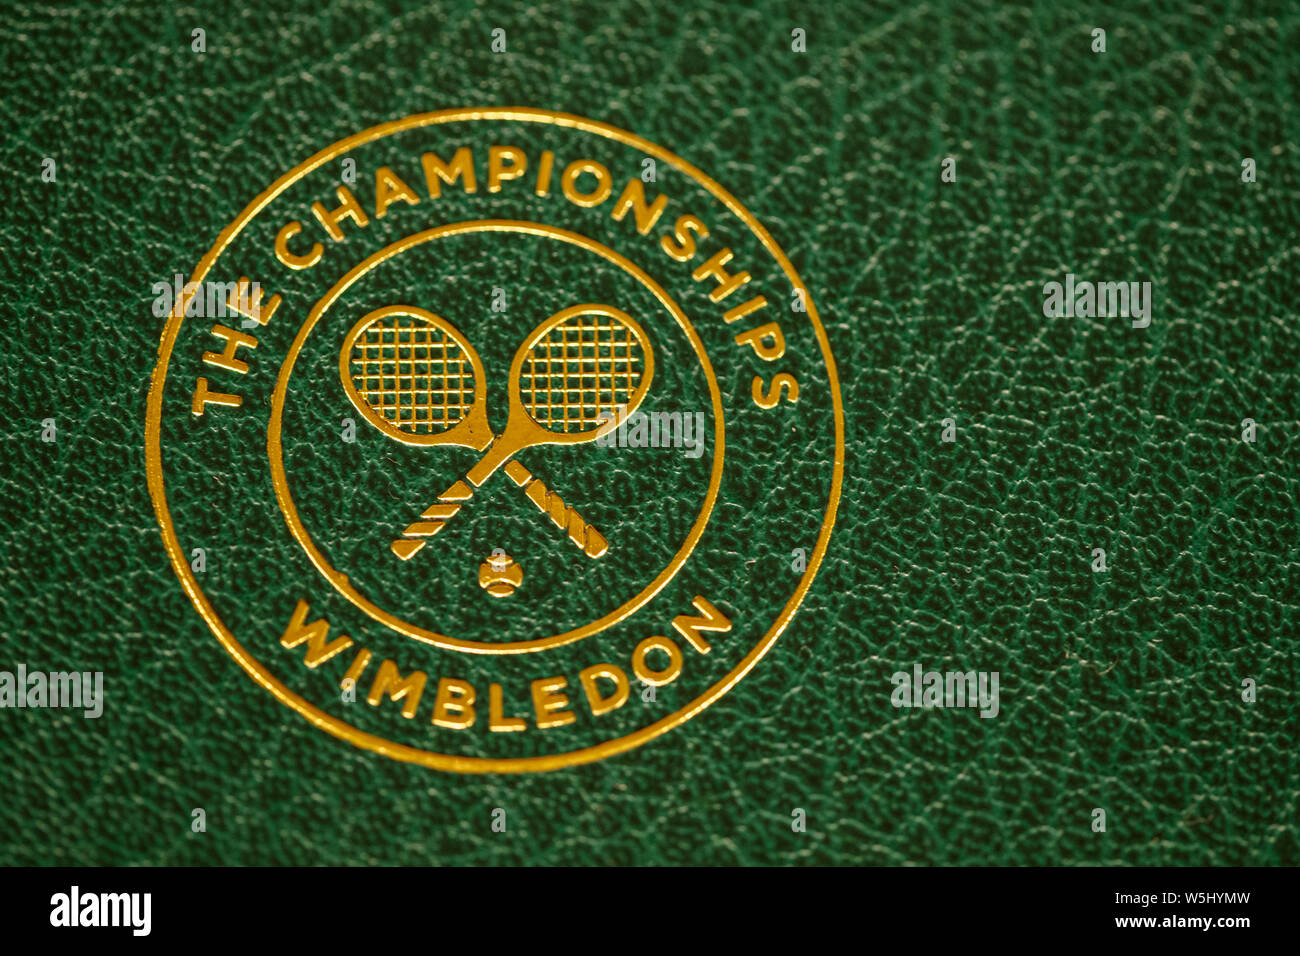 Logo sur le trophée de Wimbledon. Tenue à l'All England Lawn Tennis Club, Wimbledon Banque D'Images